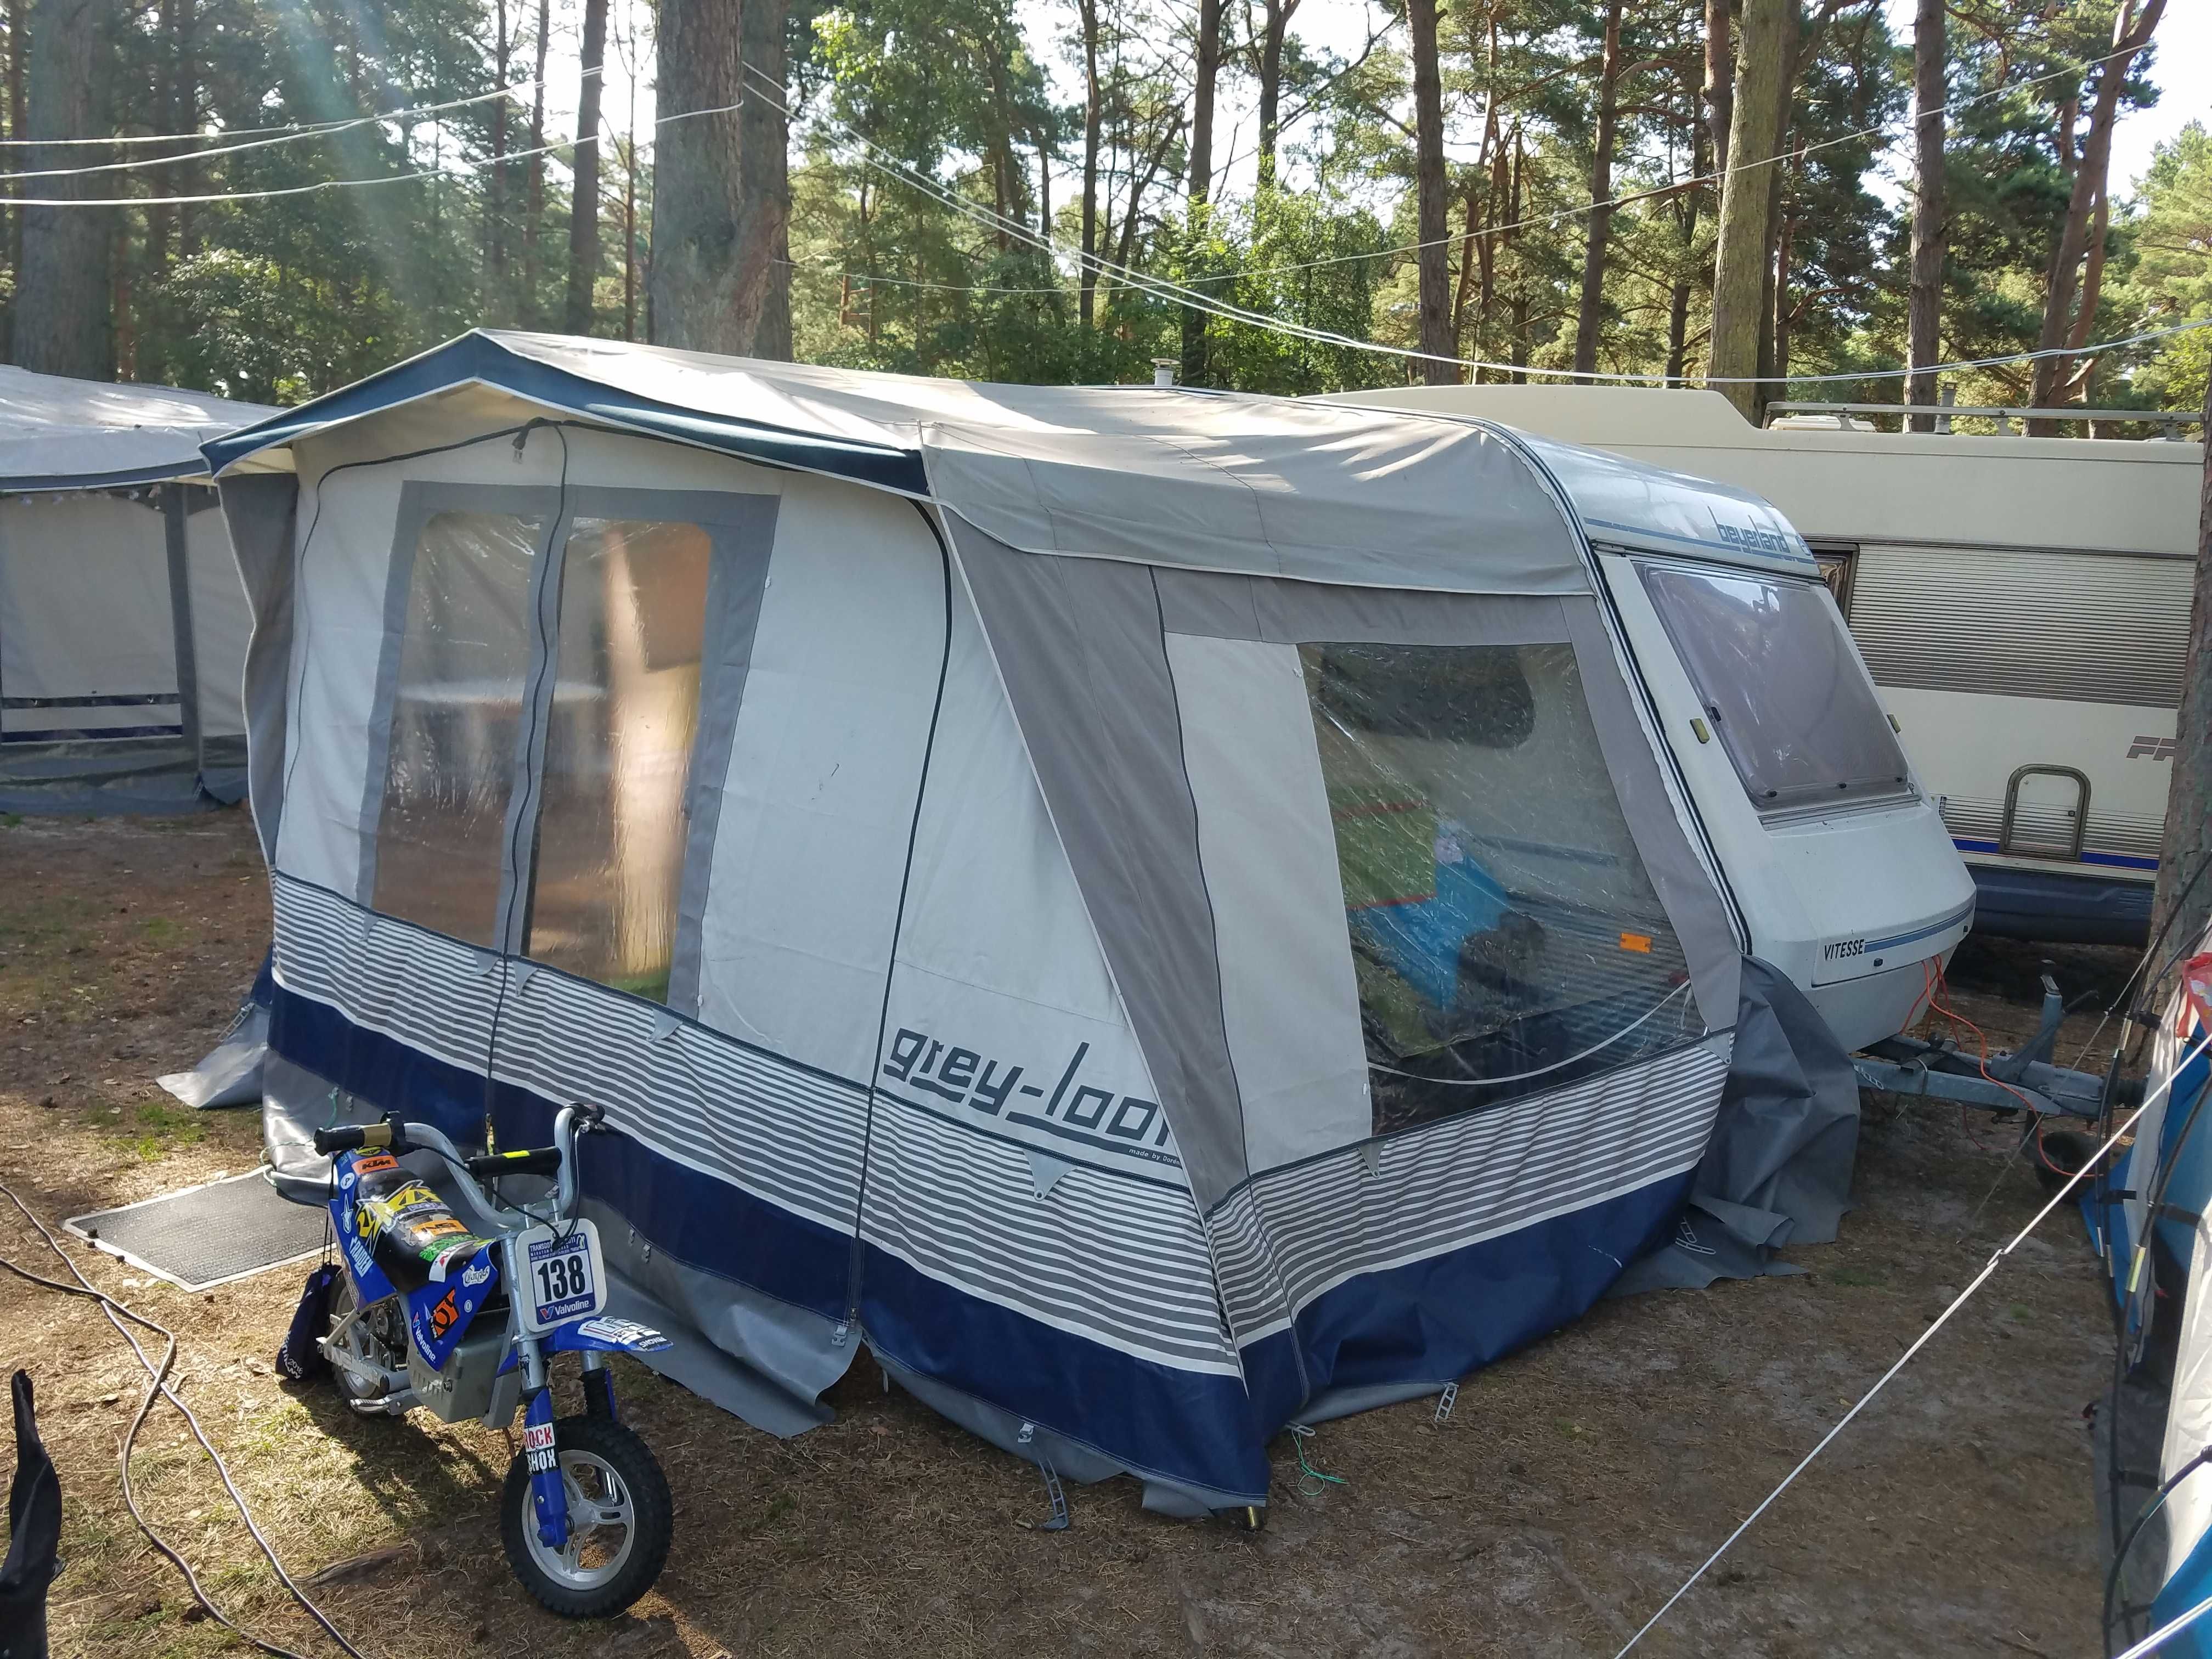 Przyczepa campingowa Beyerland vitese 350 z przedsionkiem Wrocław